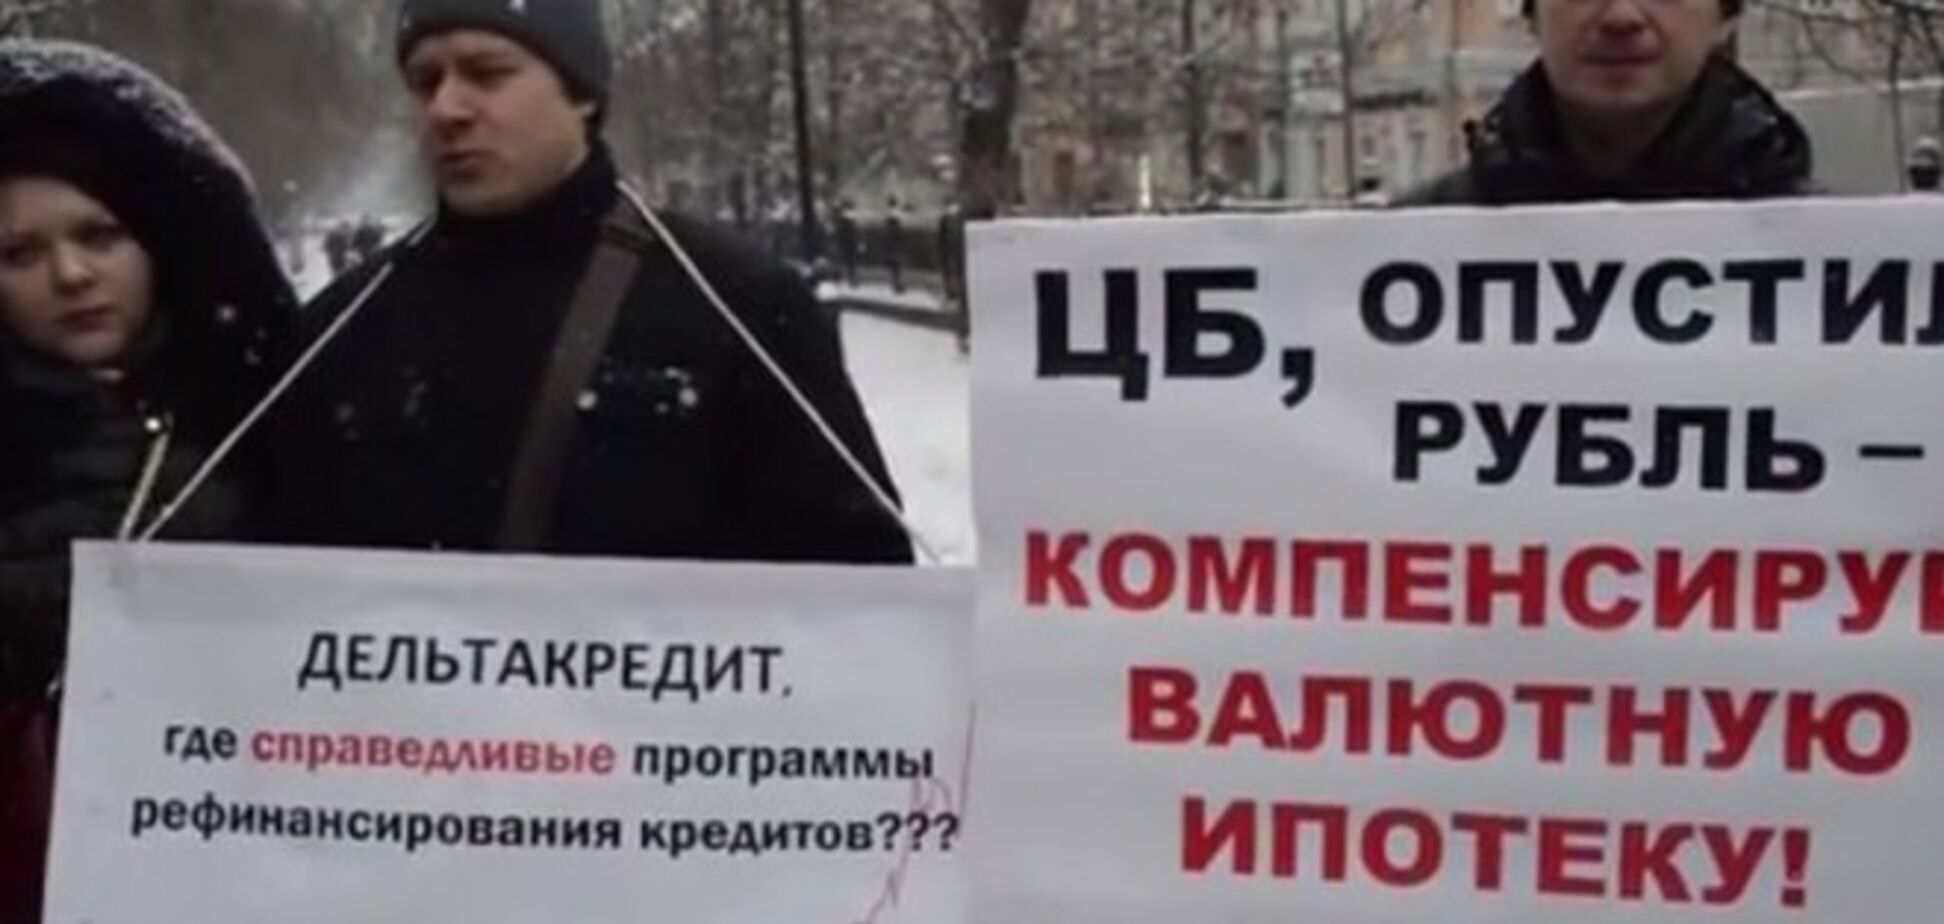 Кримнаш: москвичі, які взяли валютну іпотеку, влаштували пікет через загрозу стати бомжами